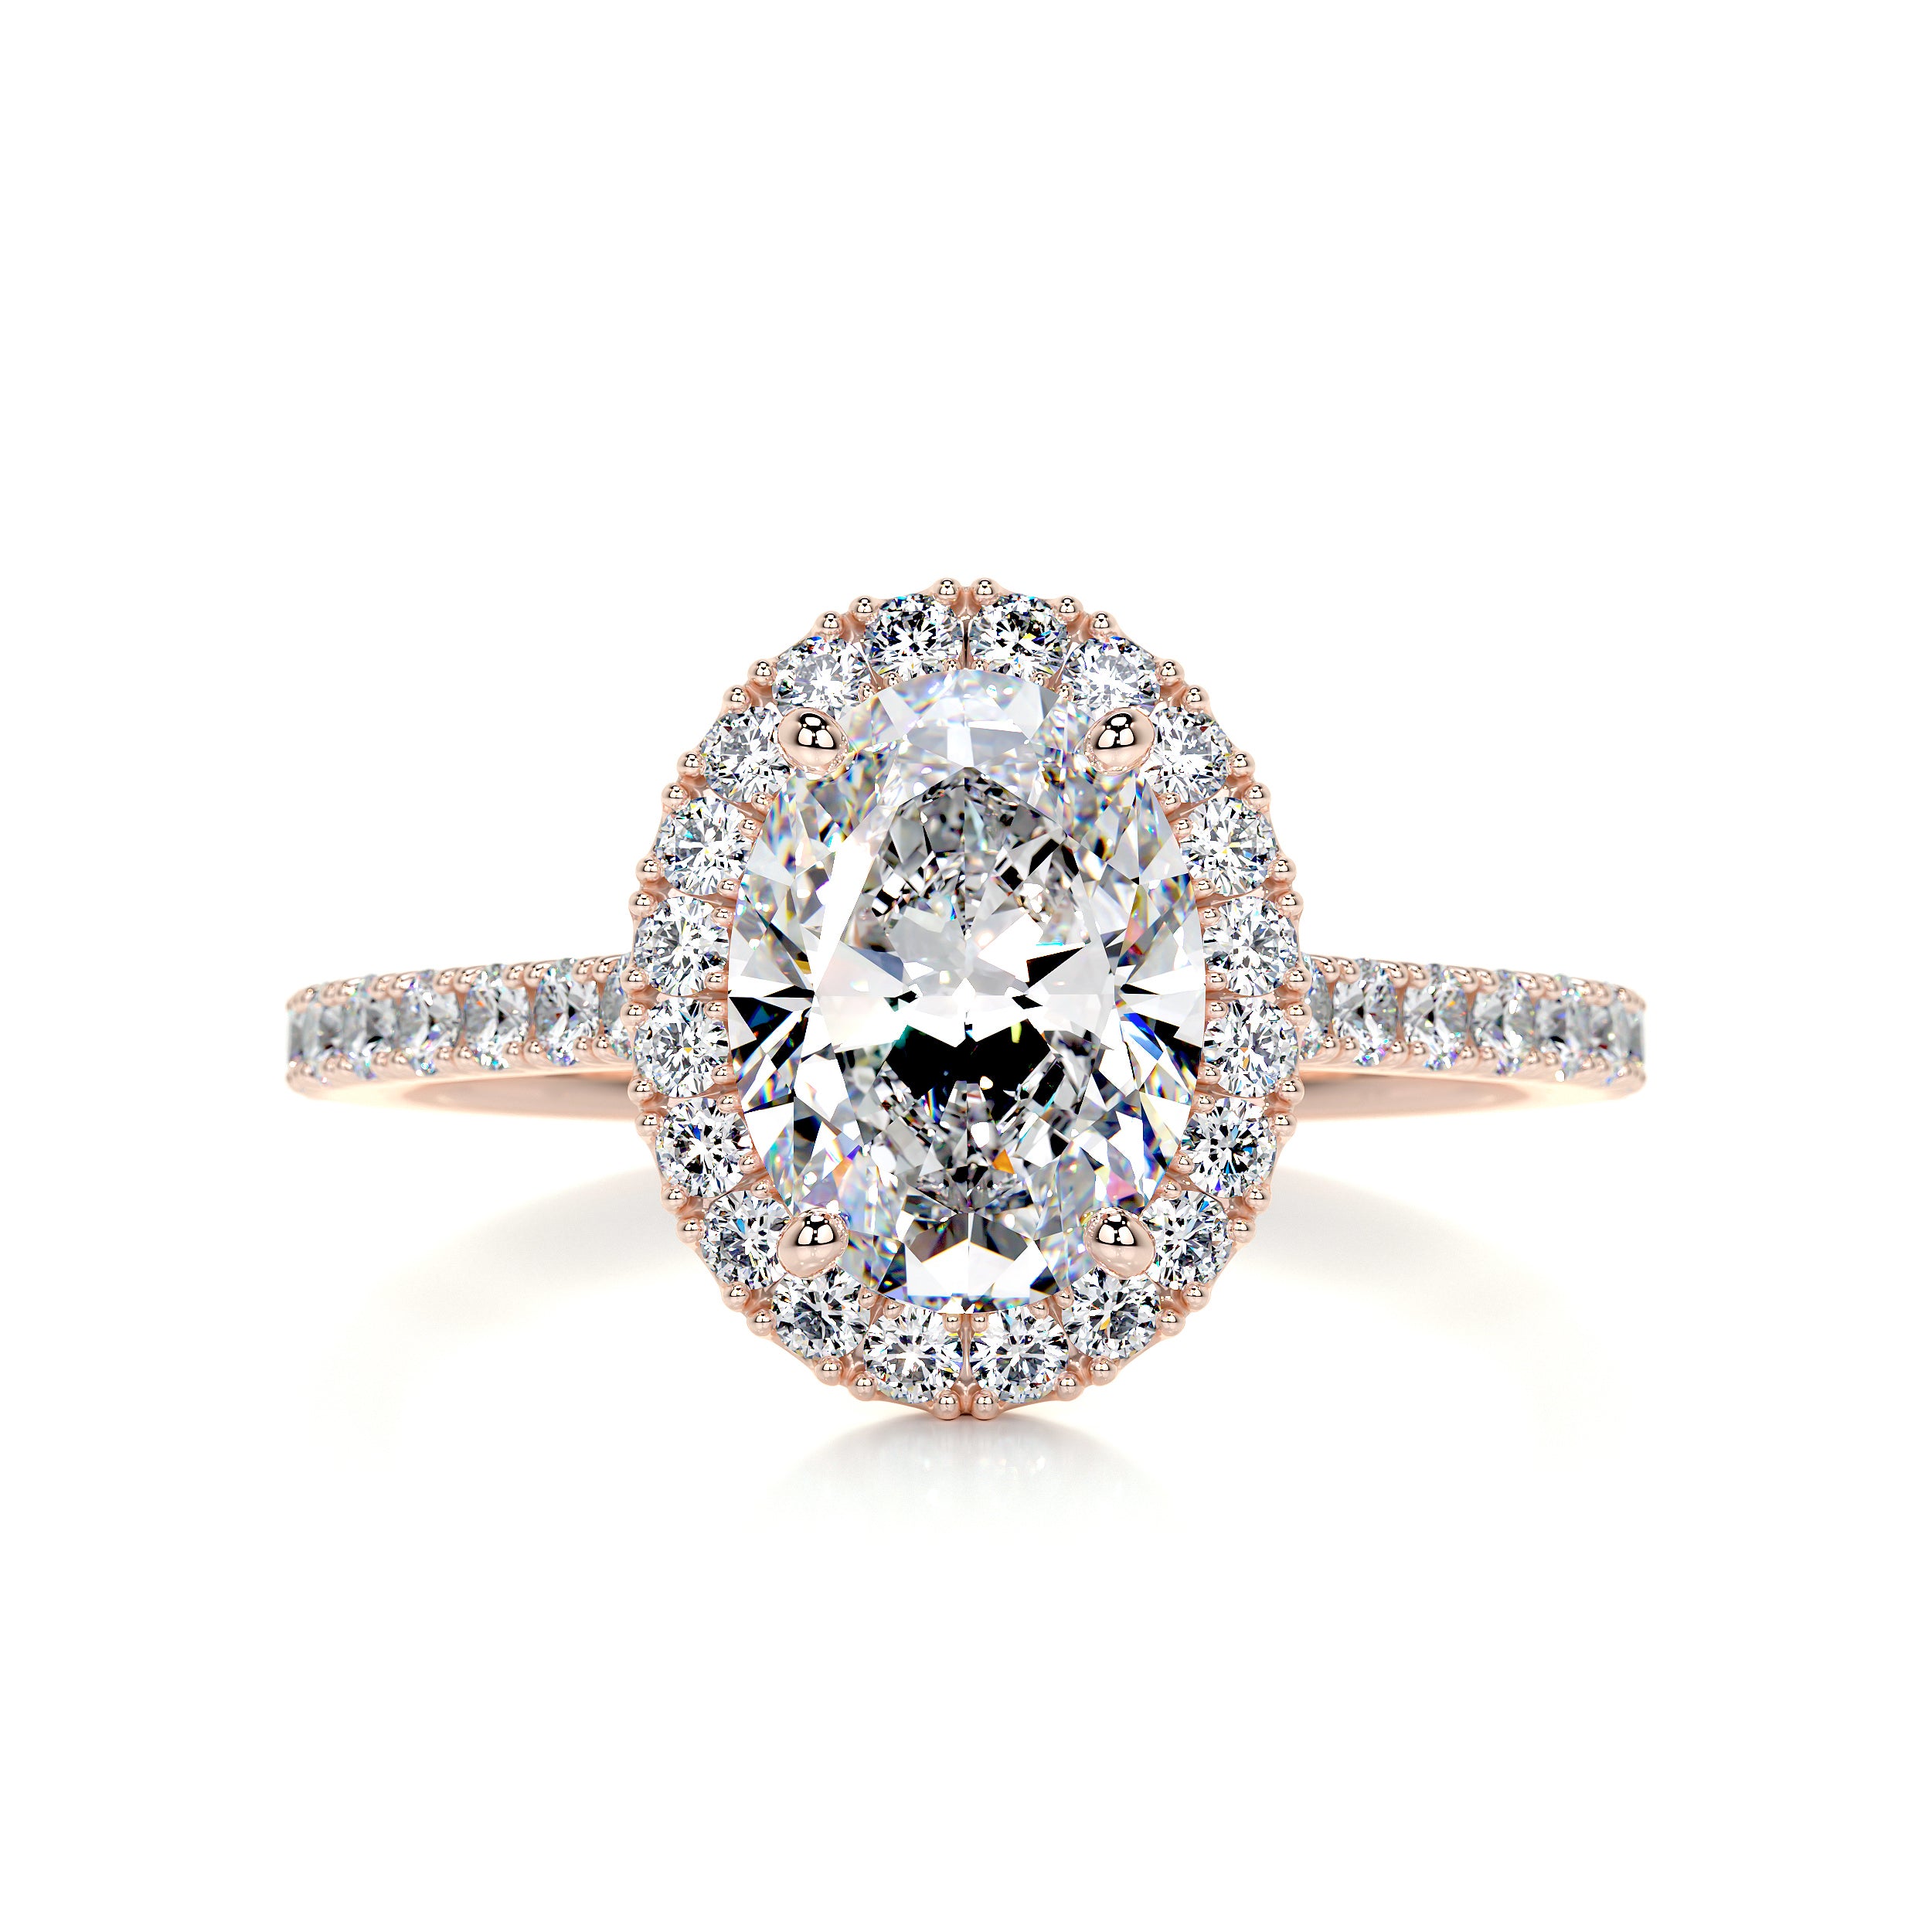 Maria Moissanite & Diamonds Ring   (2.65 Carat) -14K Rose Gold